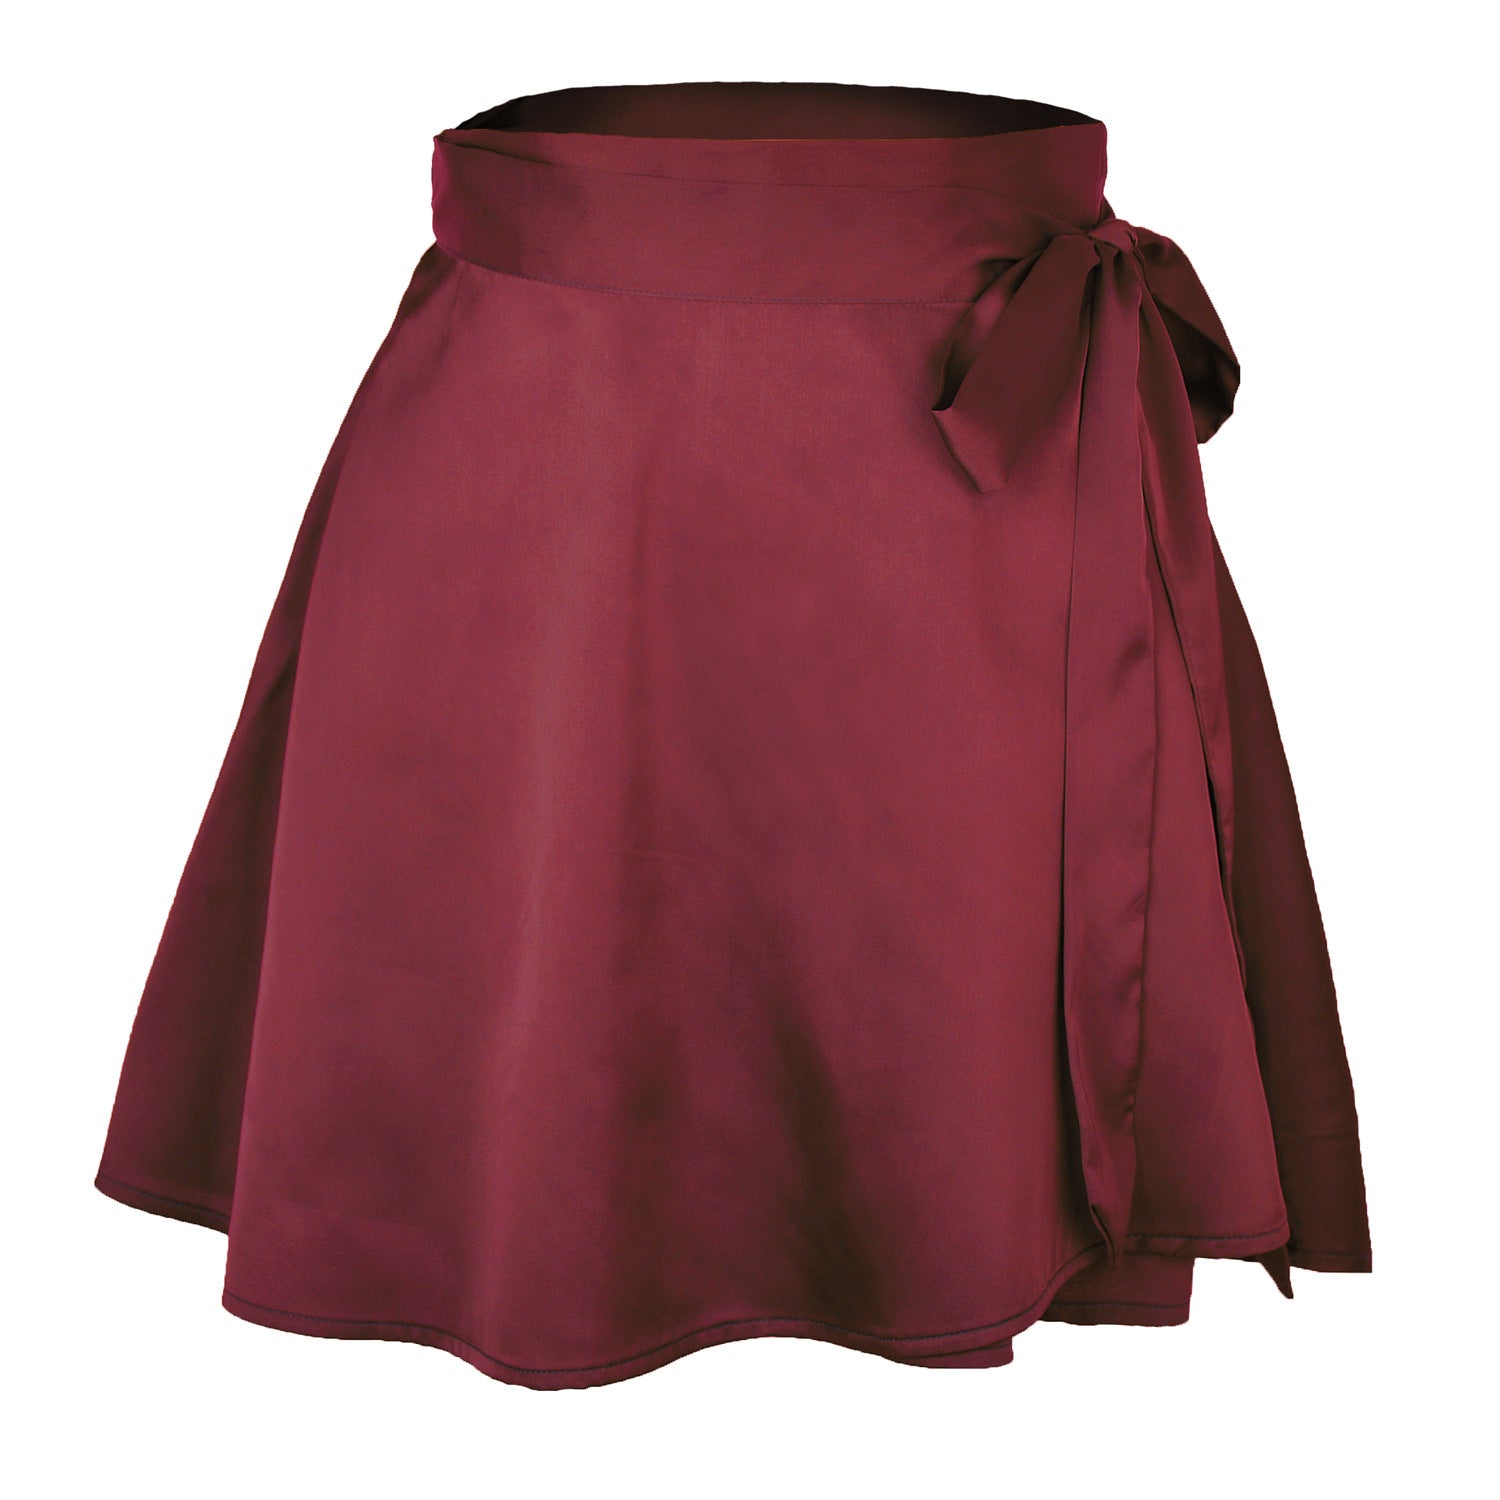 Solid High Waist Fashion Lace-up Chiffon Skirts